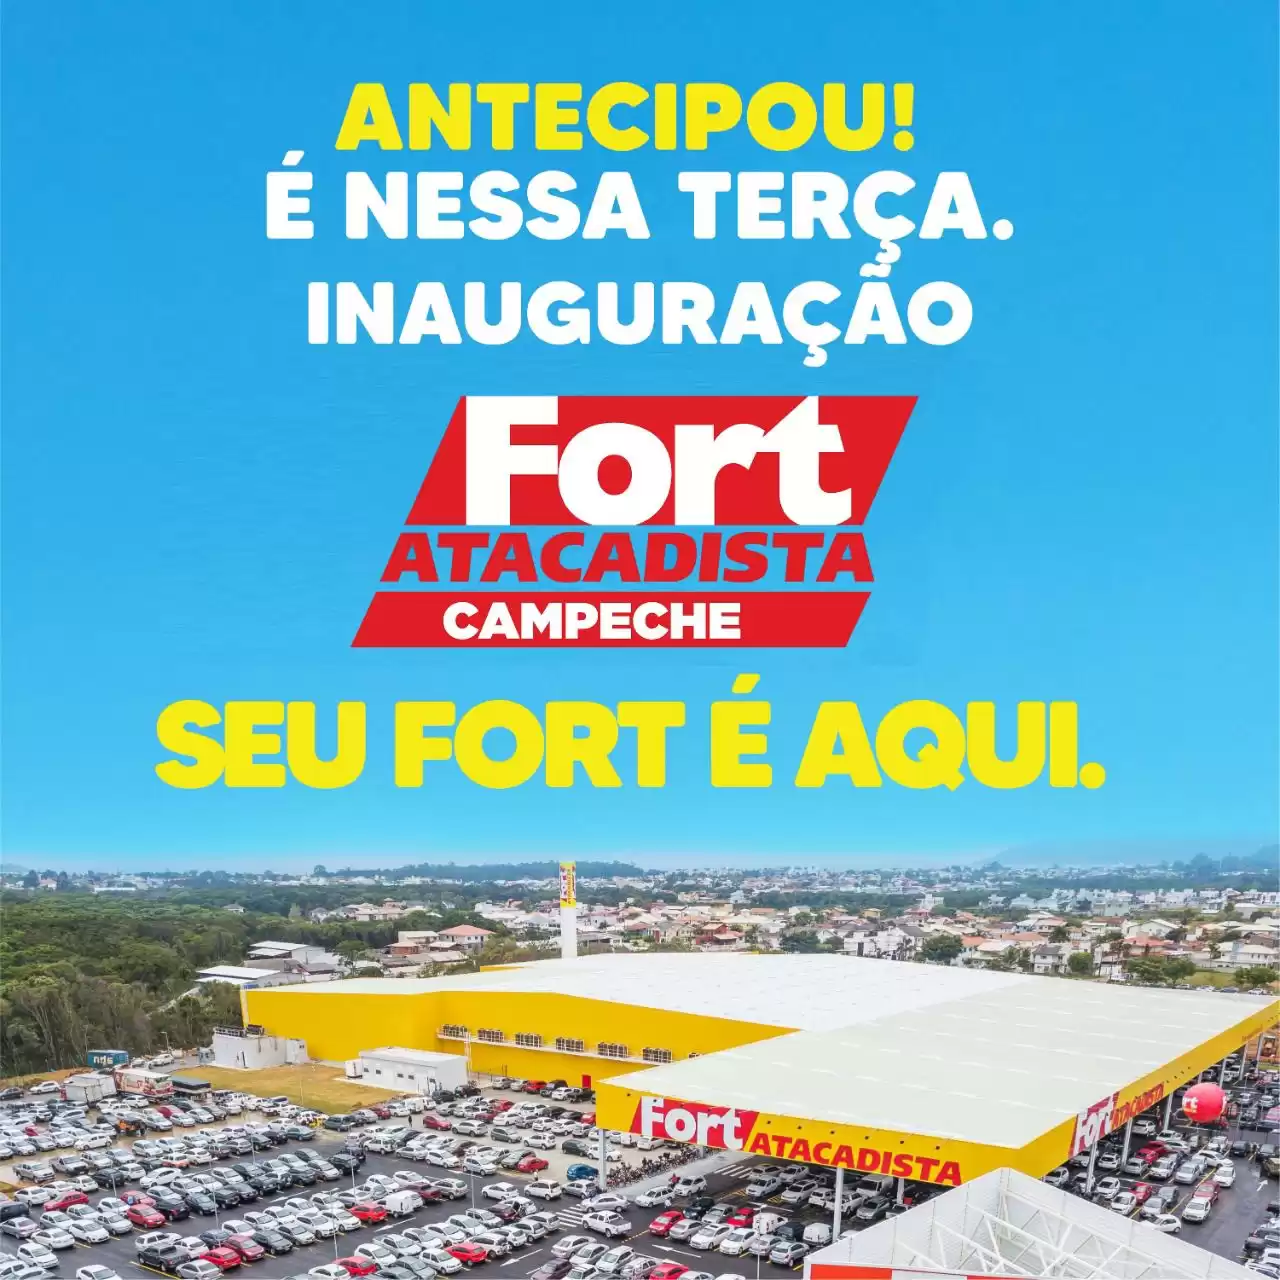 Fort Atacadista inaugura nova loja no Campeche, em Florianópolis, nesta terça-feira (26)